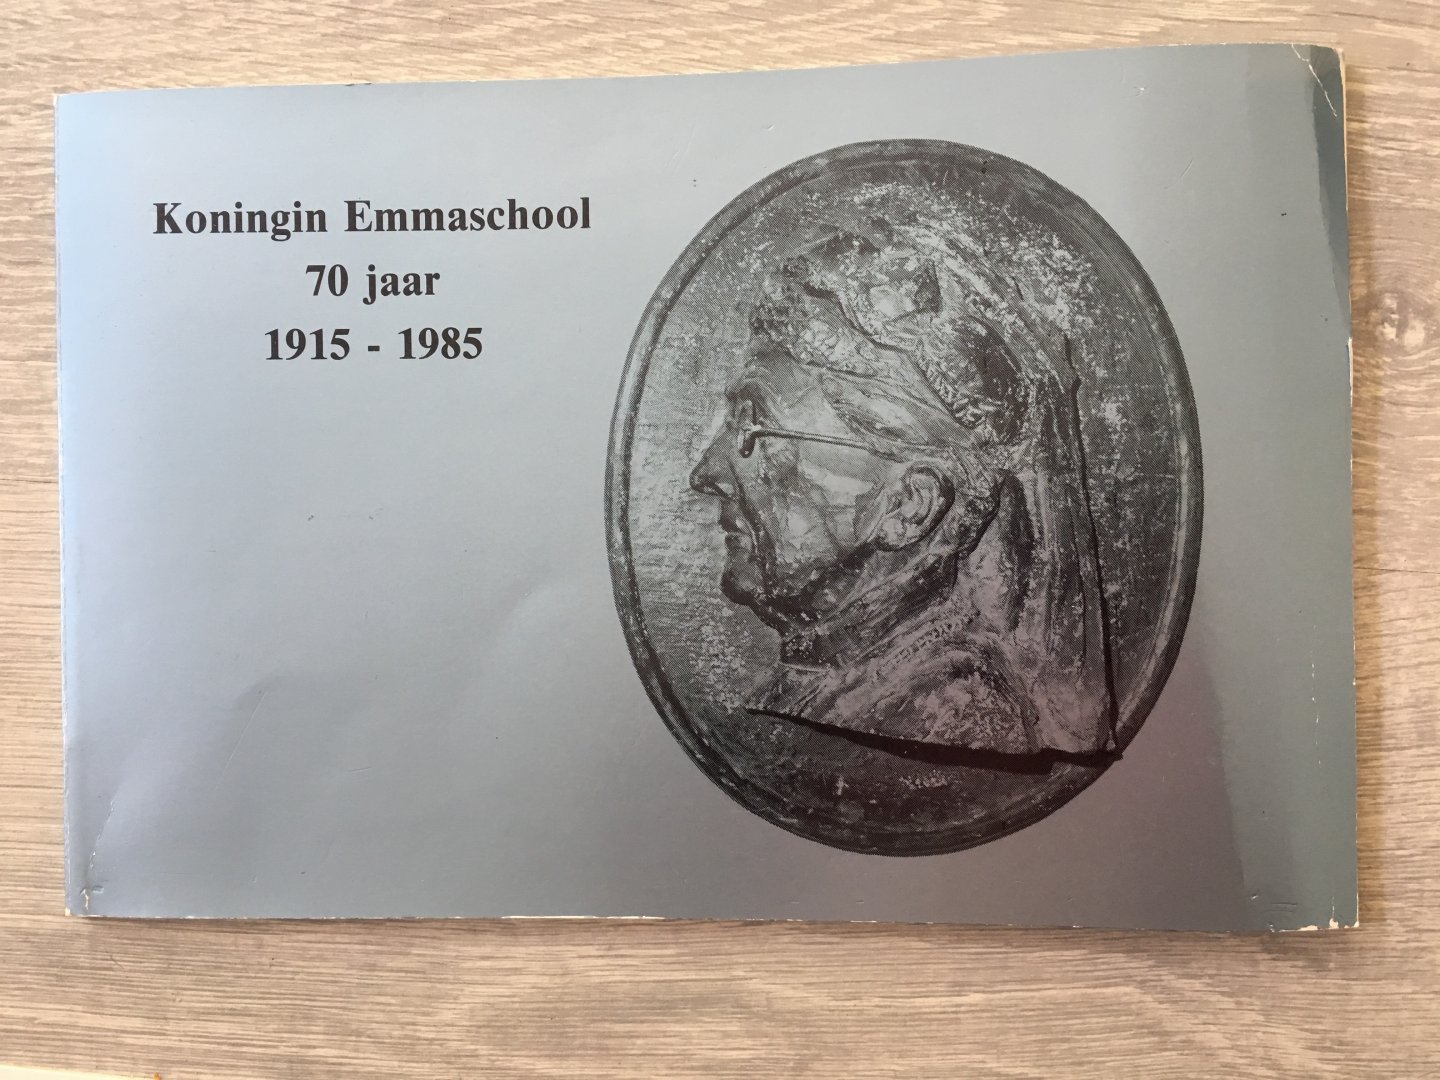  - Koningin Emmaschool 70 jaar 1915-1985